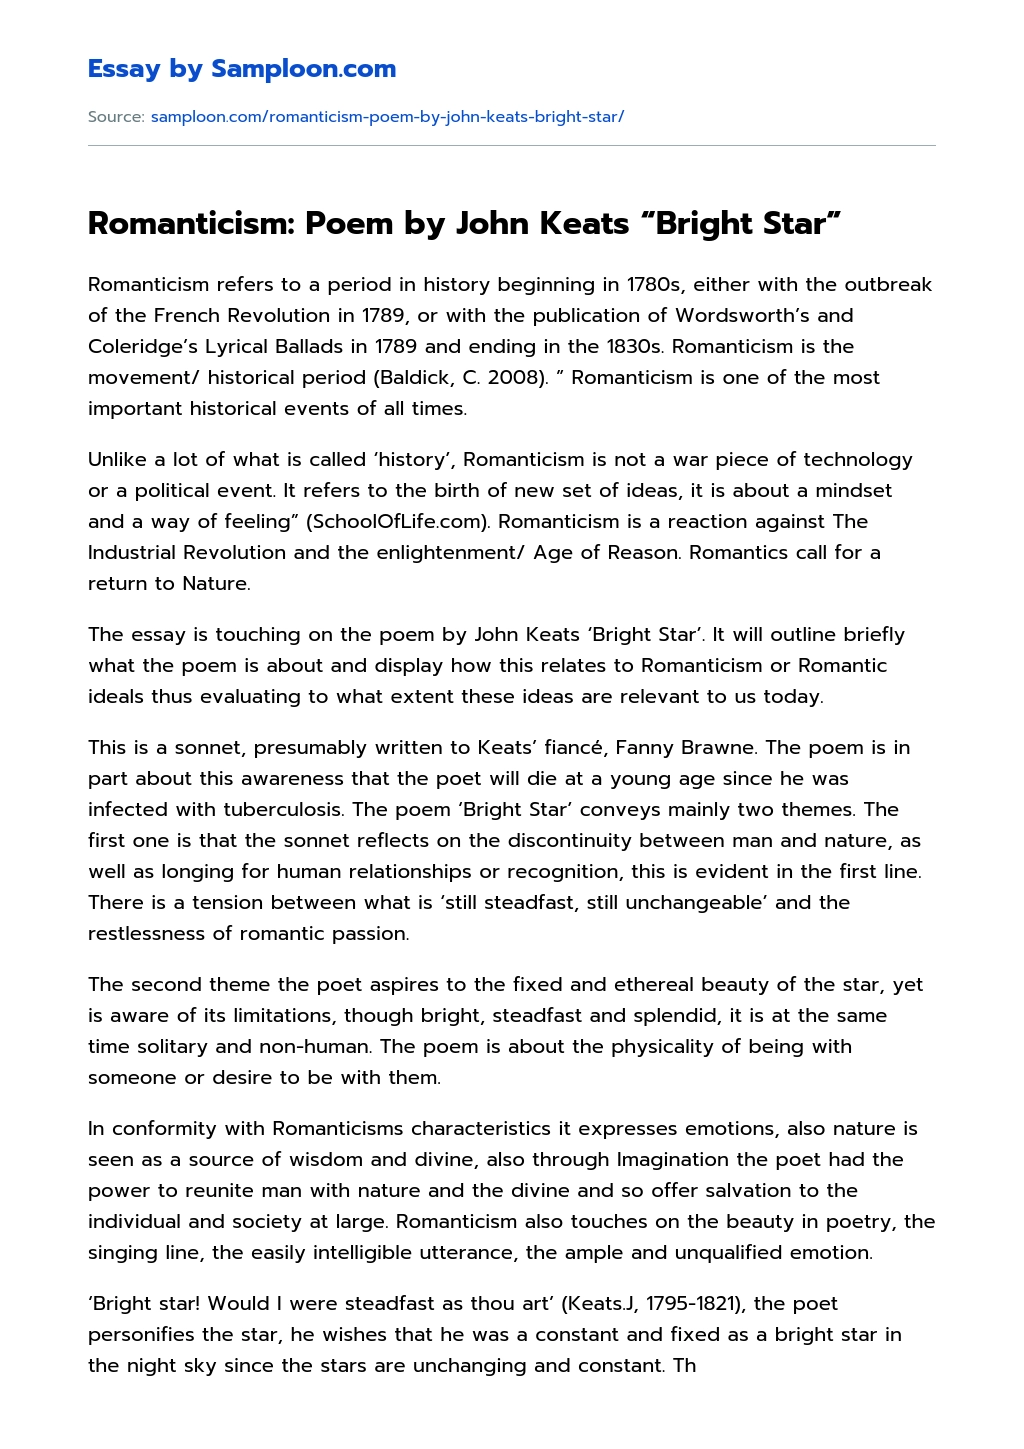 Romanticism: Poem by John Keats “Bright Star” essay